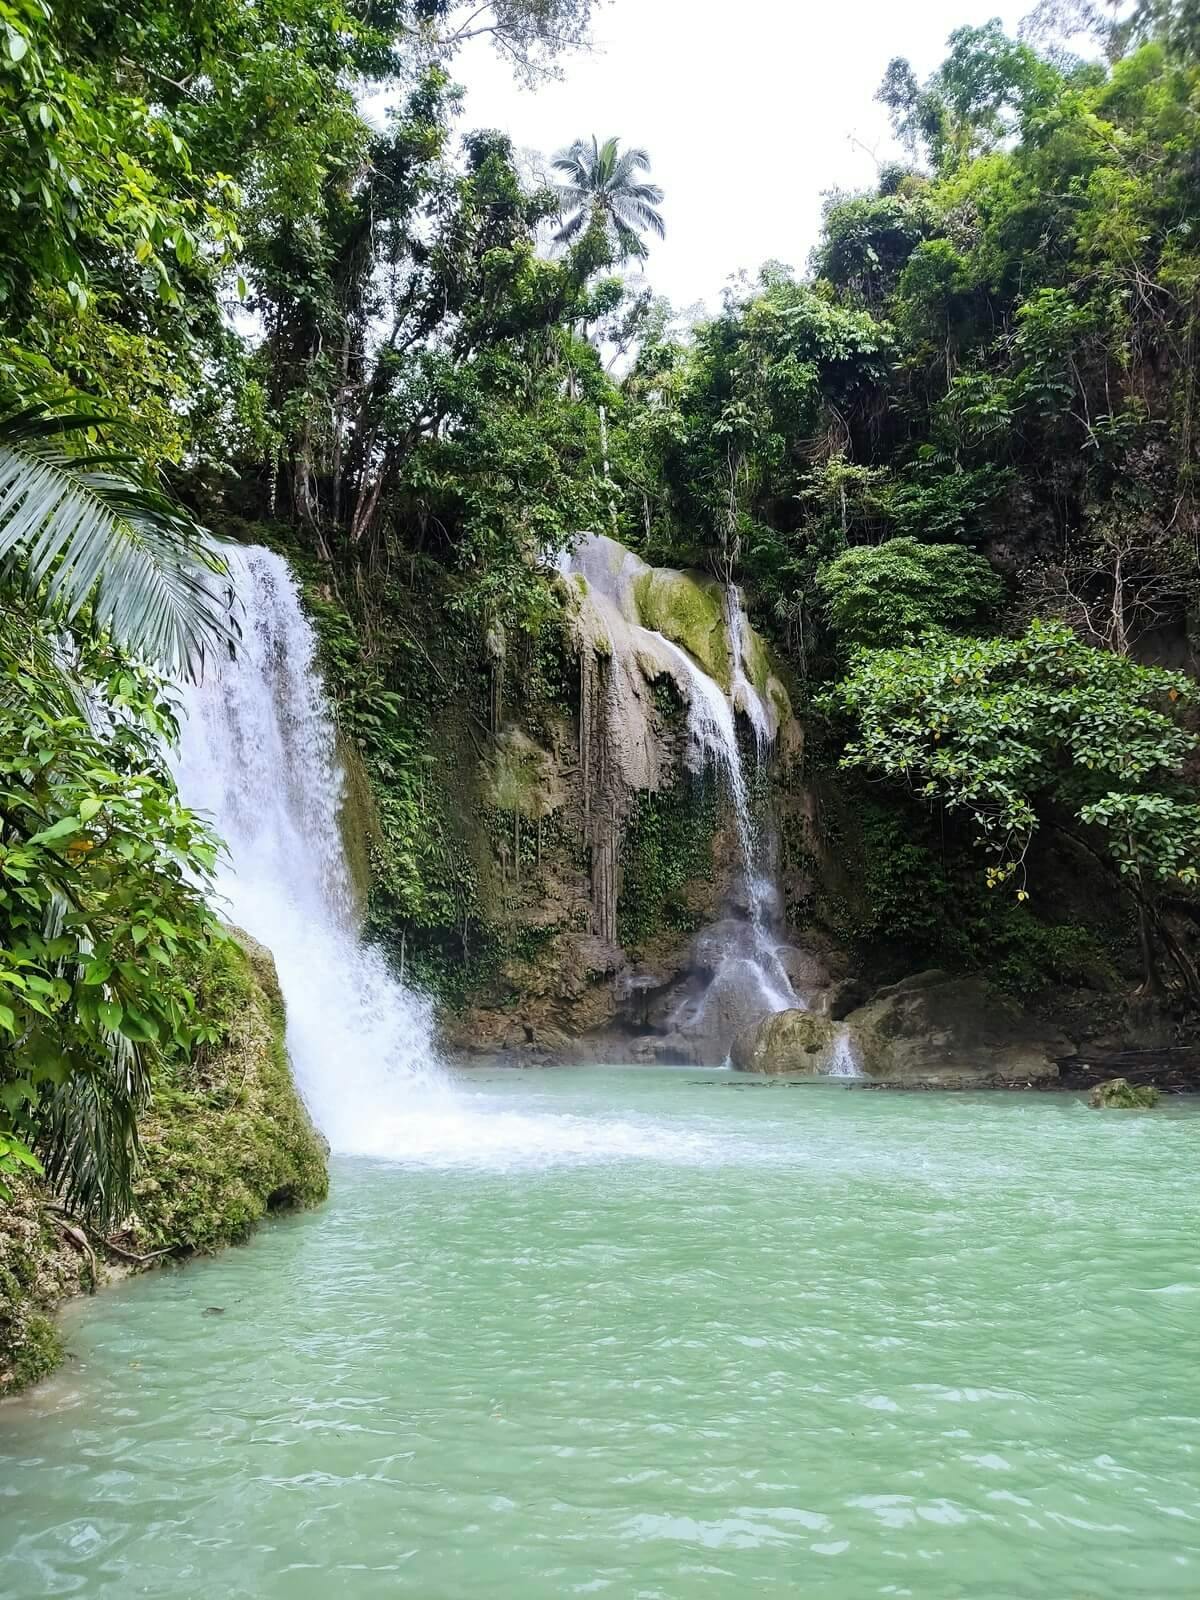 Excursión guiada a las cascadas escondidas de Bohol.